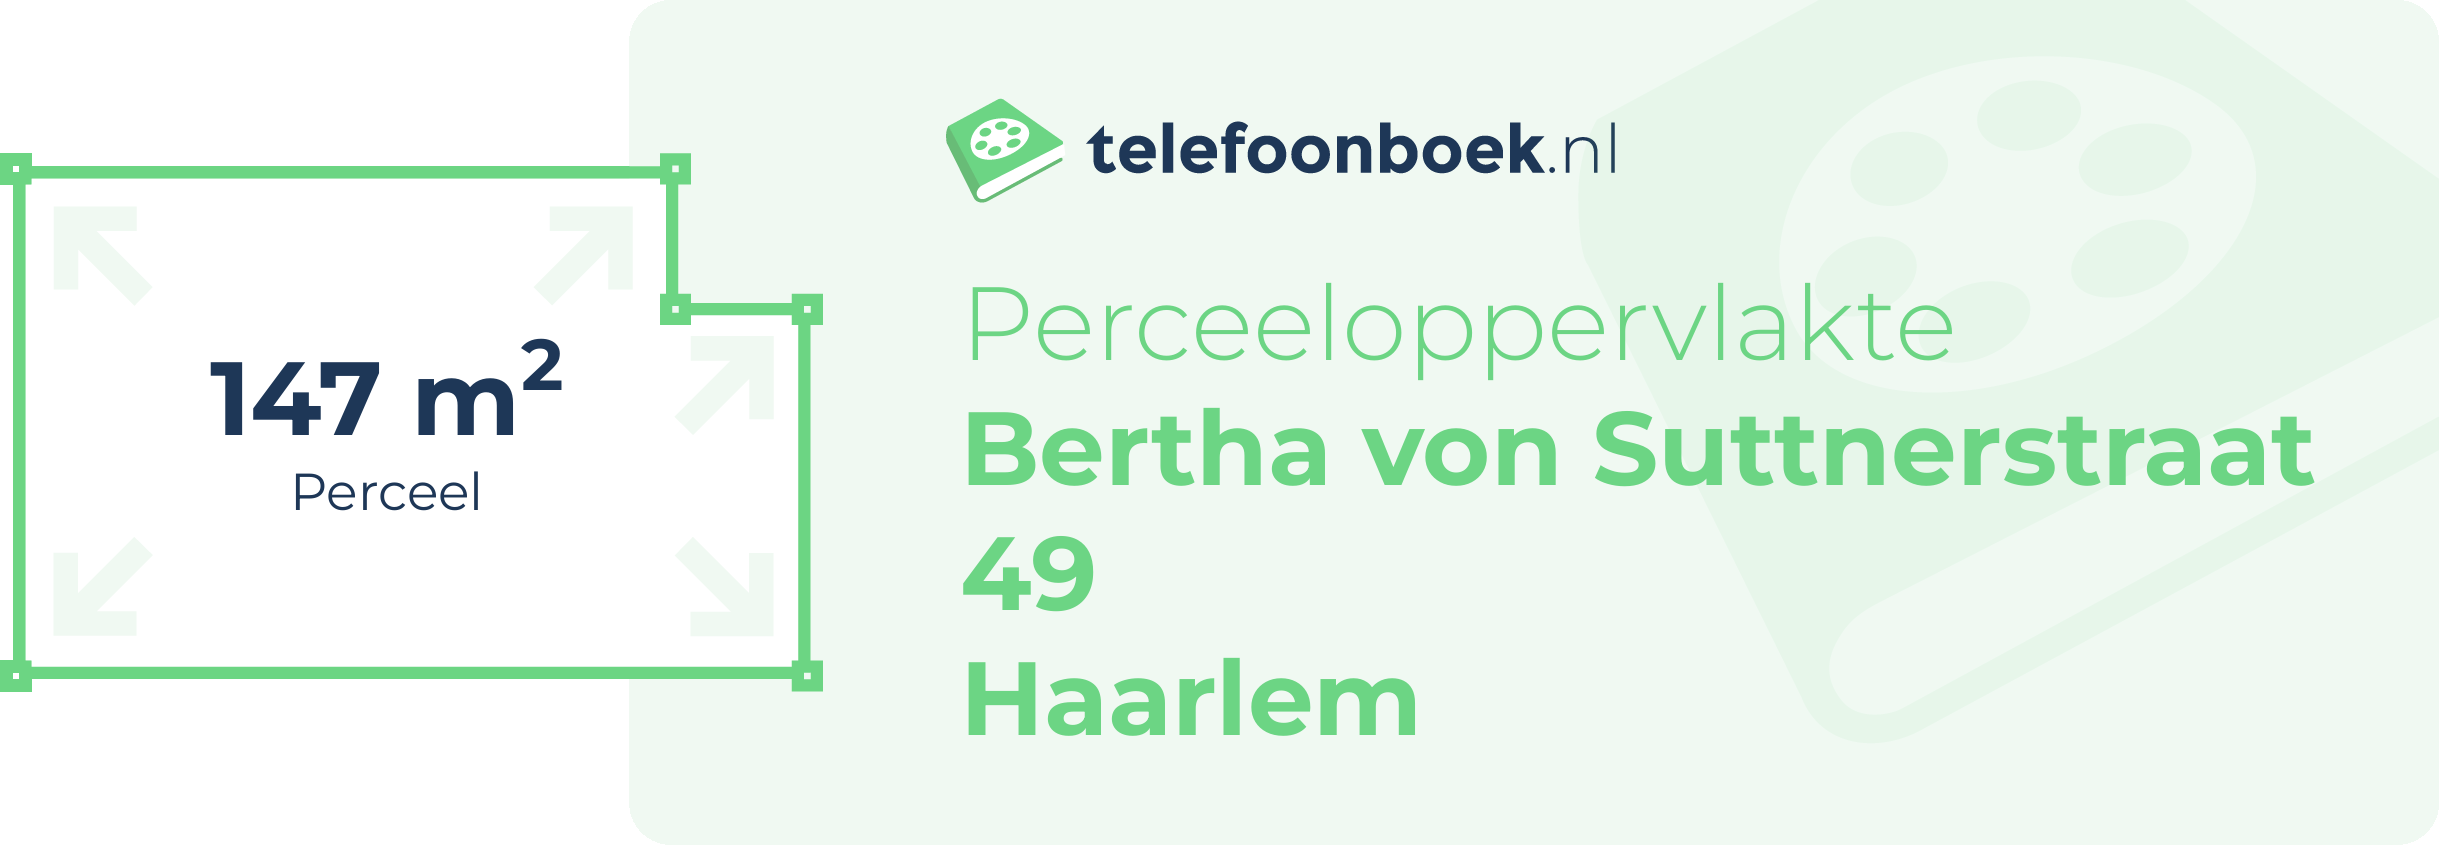 Perceeloppervlakte Bertha Von Suttnerstraat 49 Haarlem